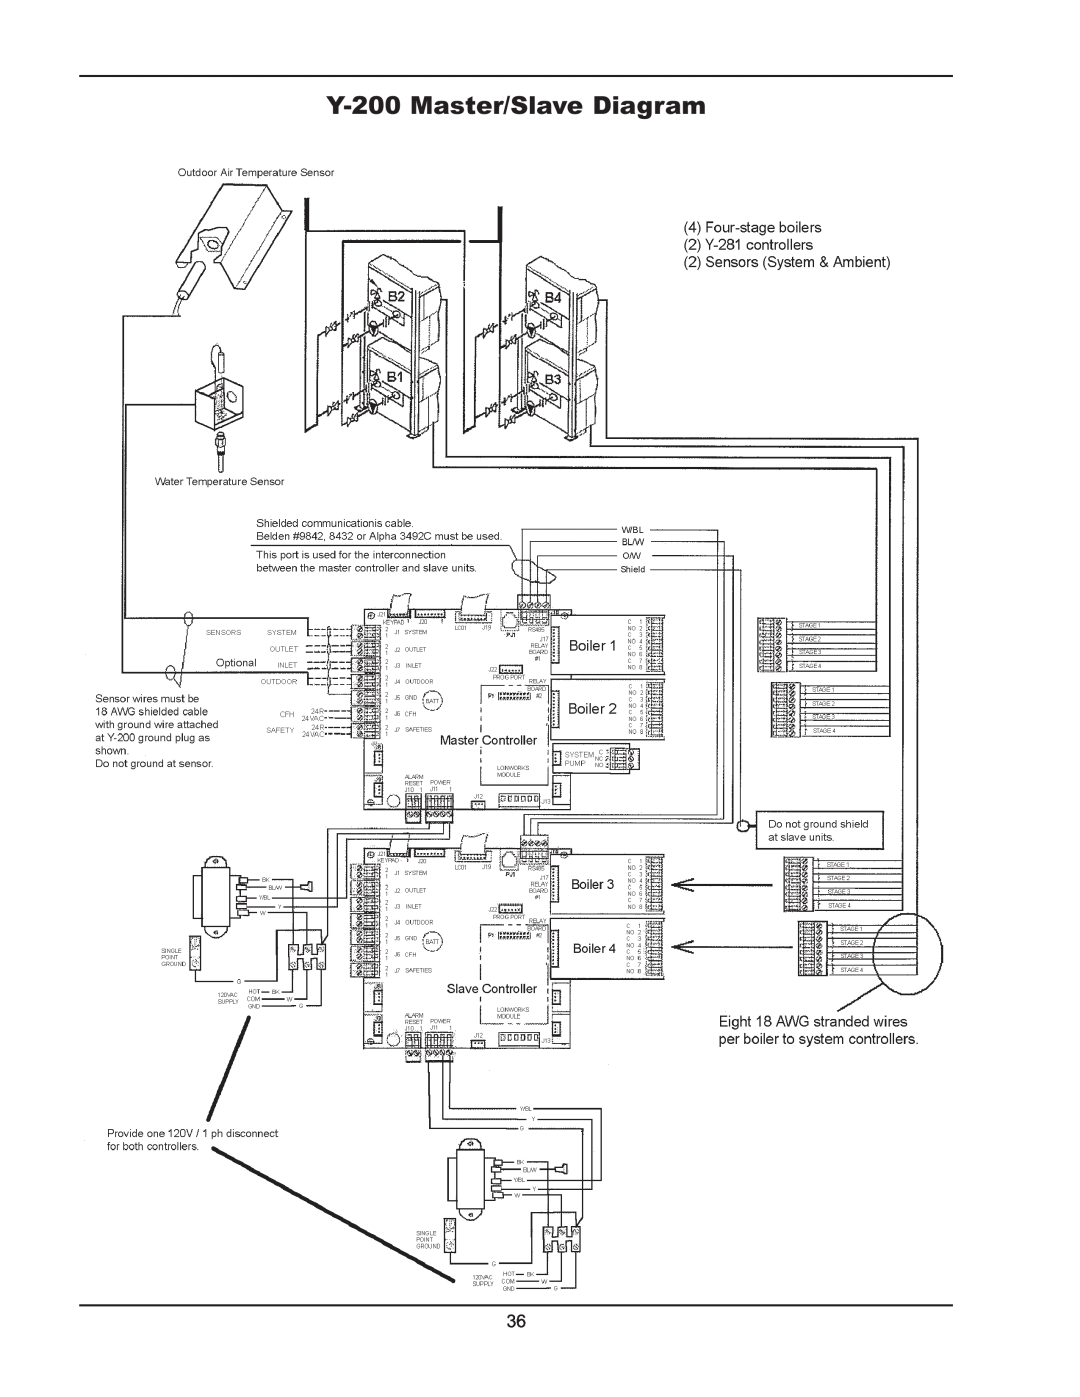 Raypak manual Y-200Master/Slave Diagram 